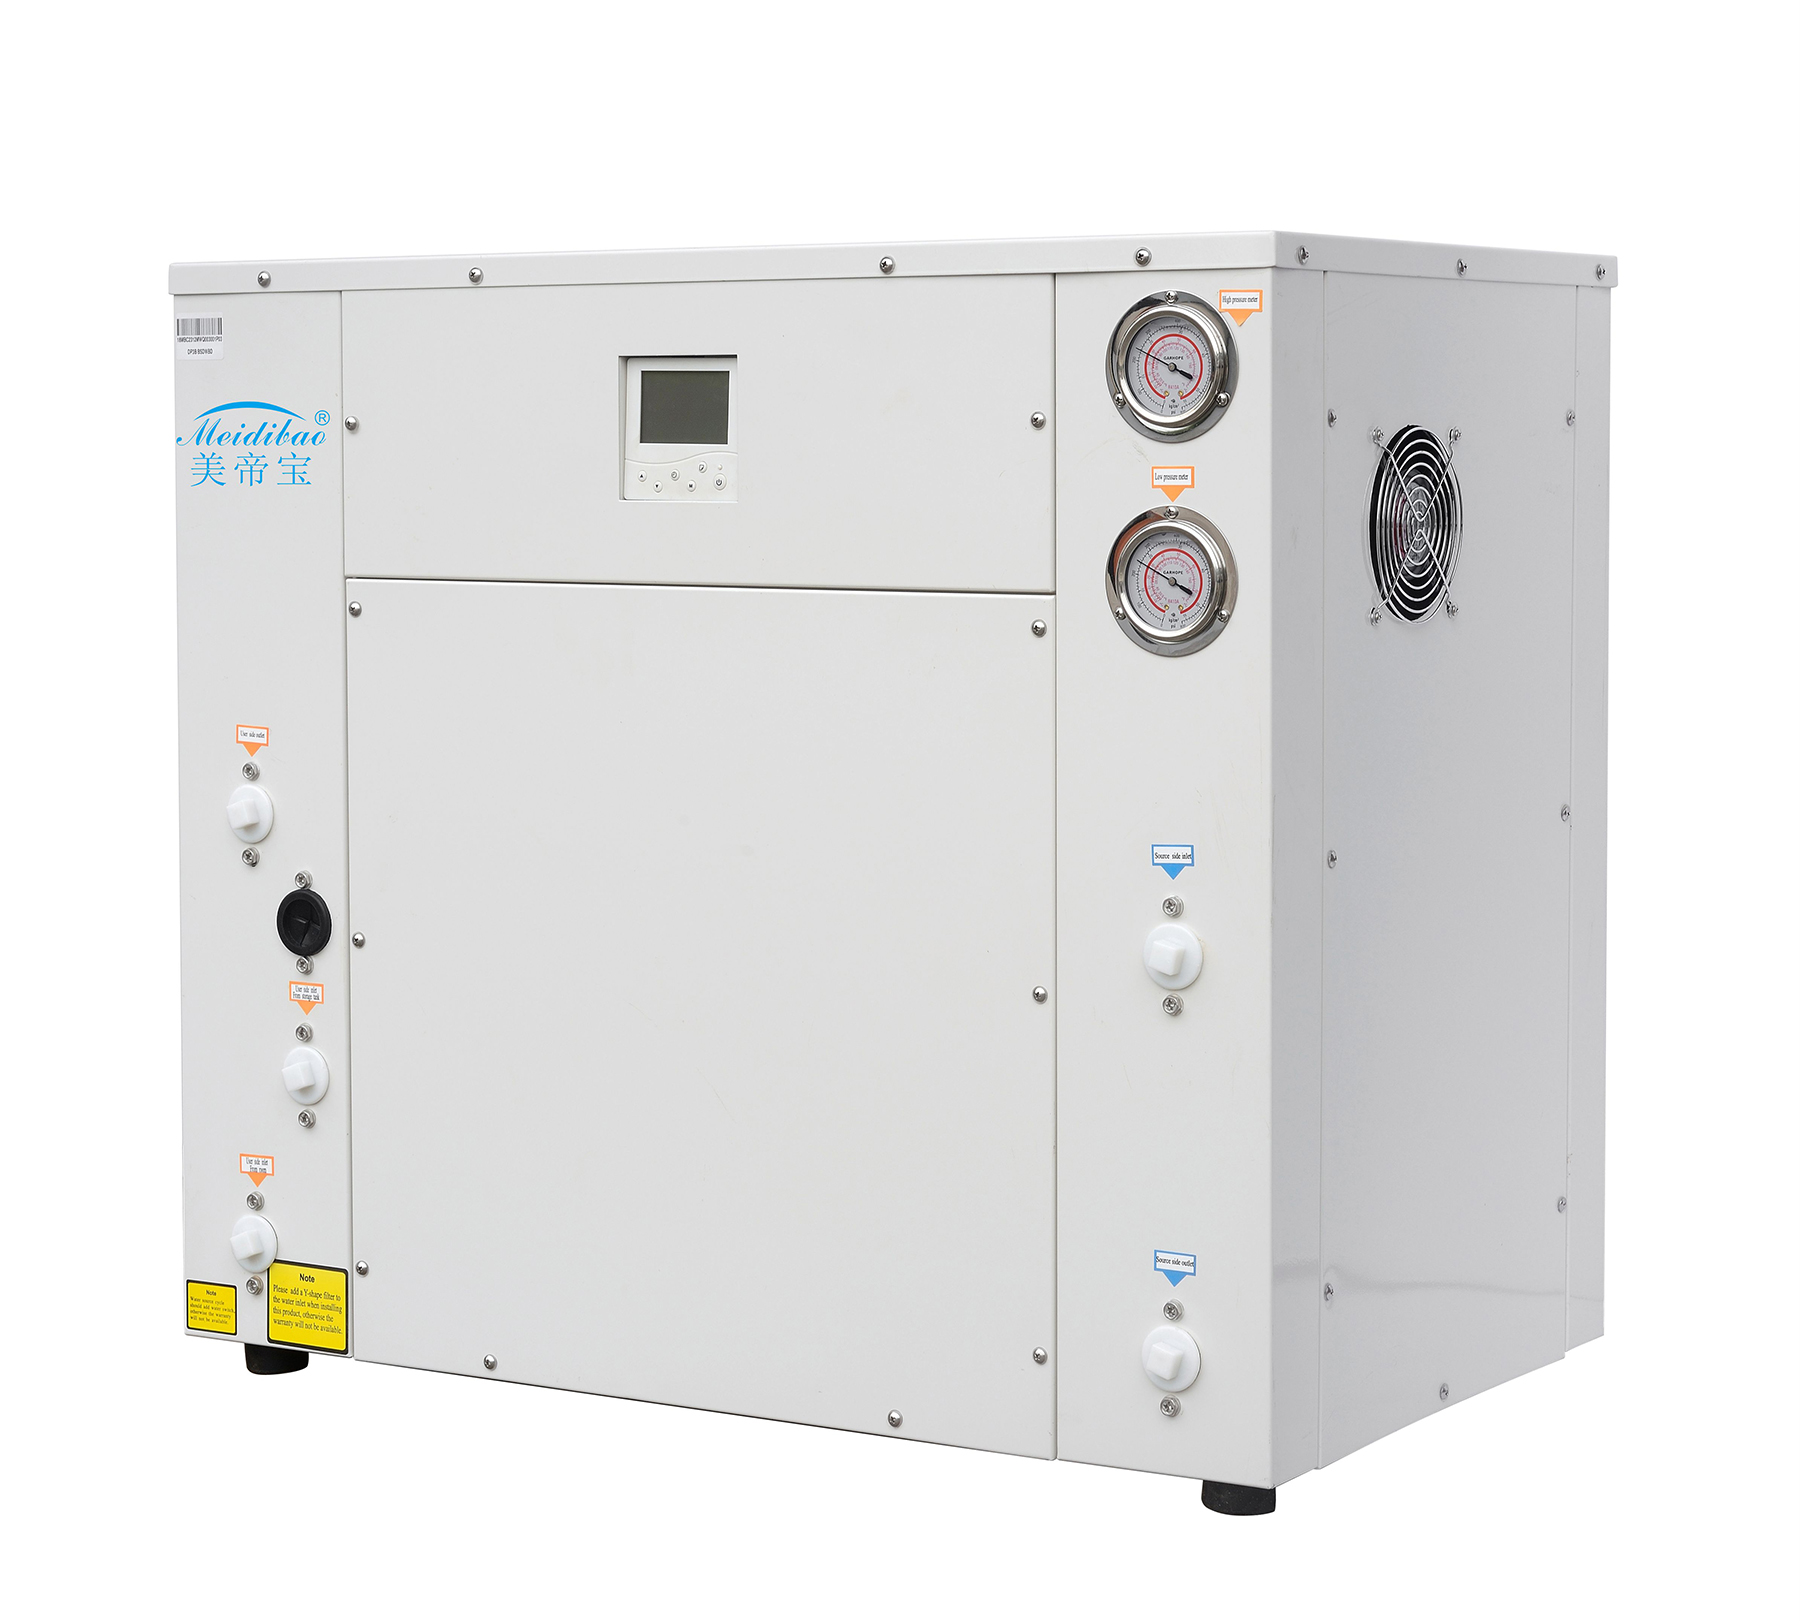 Efficient 100 Kw Ground Source Heat Pump for Hot Water